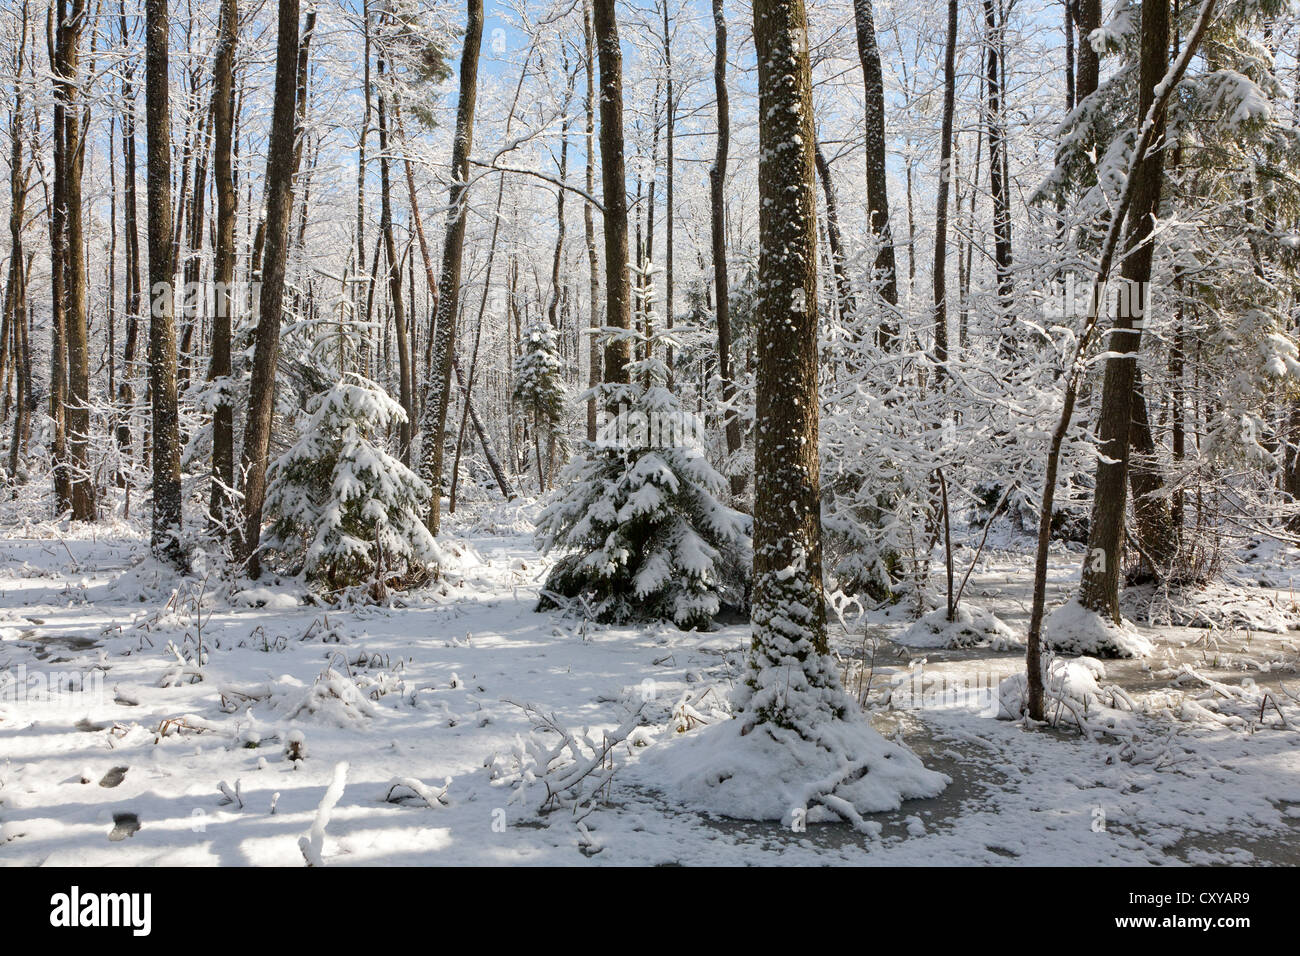 Après les chutes de neige dans des zones humides se matin de neige arbres emballés et congelés autour de l'eau Banque D'Images